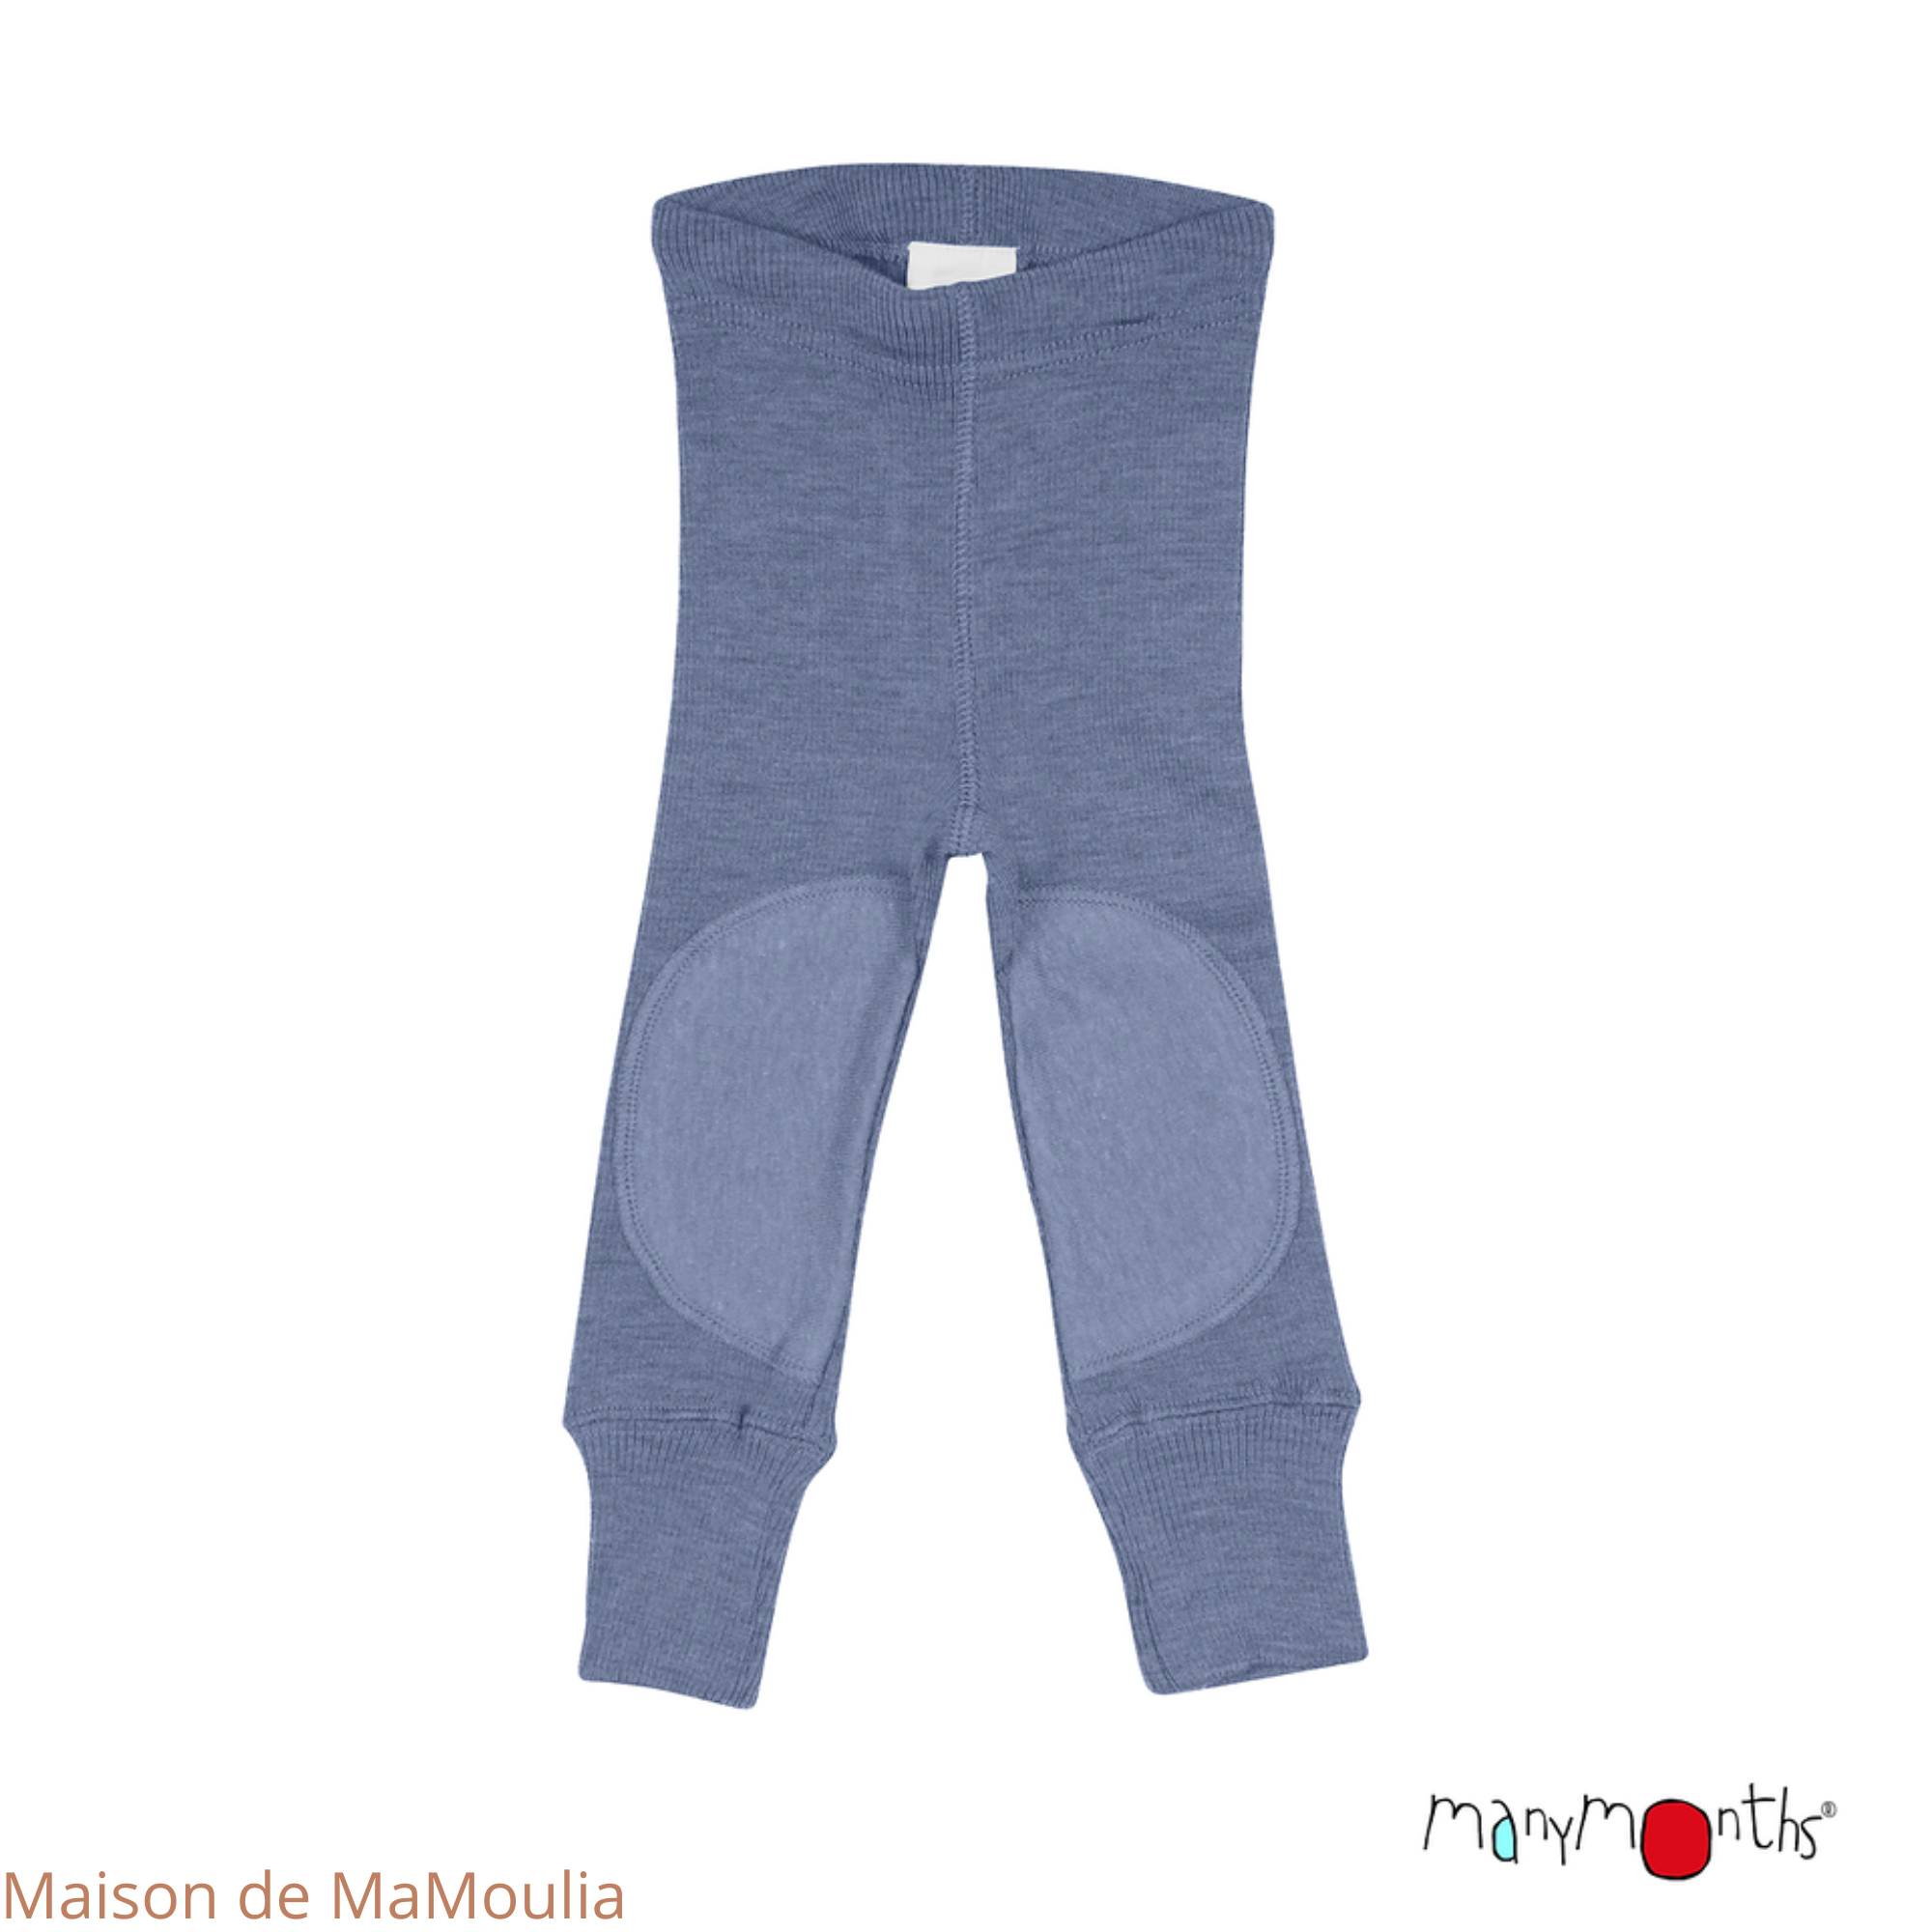 manymonths-legging-ajustable-genouilleres-patches-evolutif-enfant-laine-merinos-maison-de-mamoulia-bleu-mist